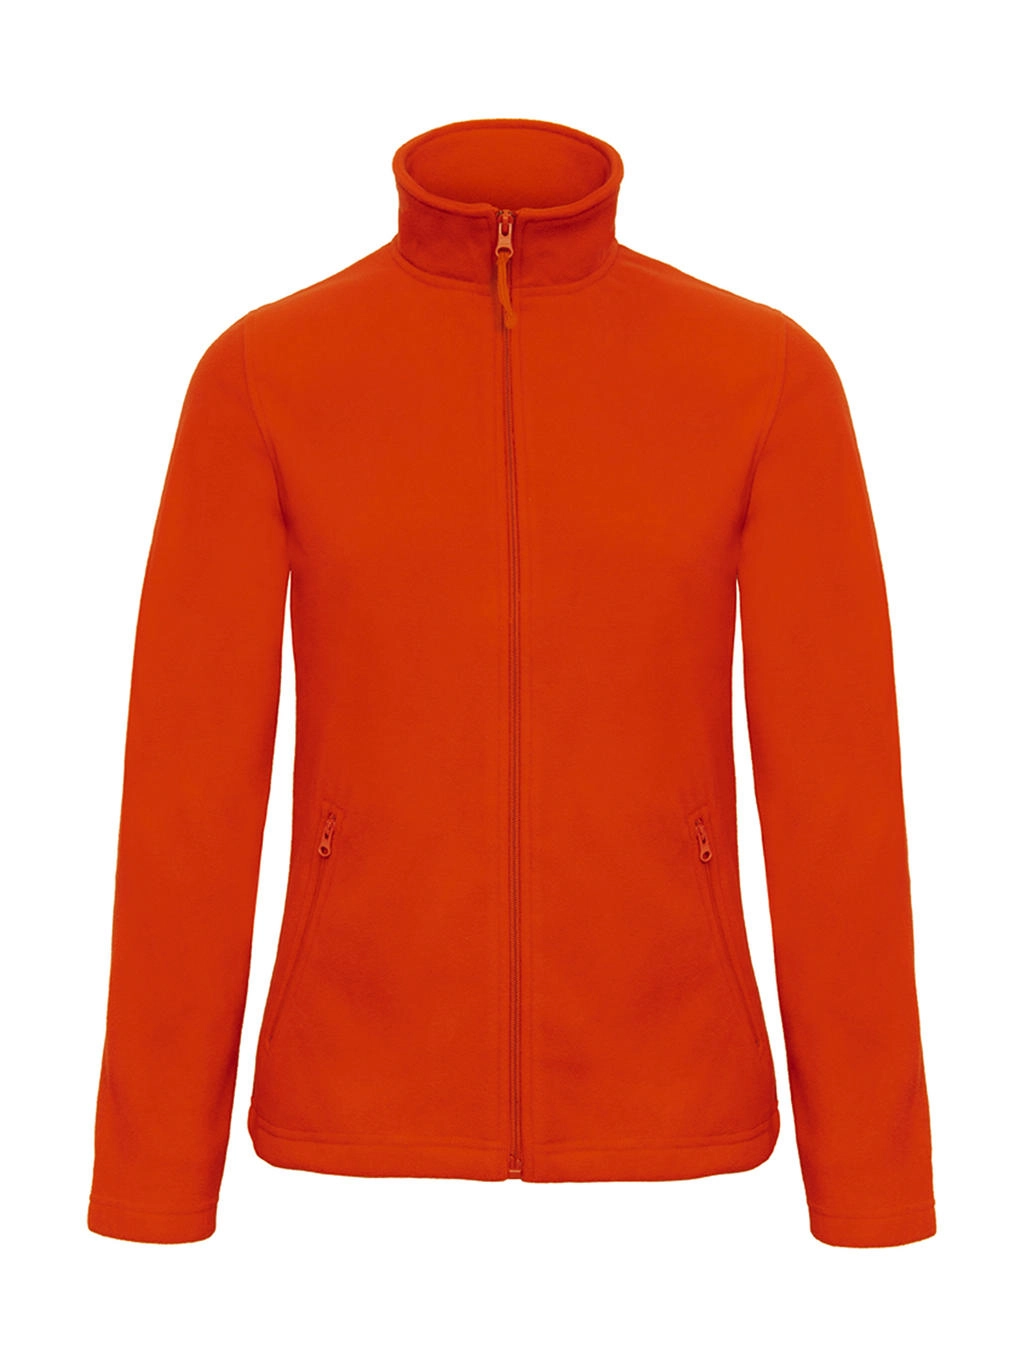 ID.501/women Micro Fleece Full Zip zum Besticken und Bedrucken in der Farbe Pumpkin Orange mit Ihren Logo, Schriftzug oder Motiv.